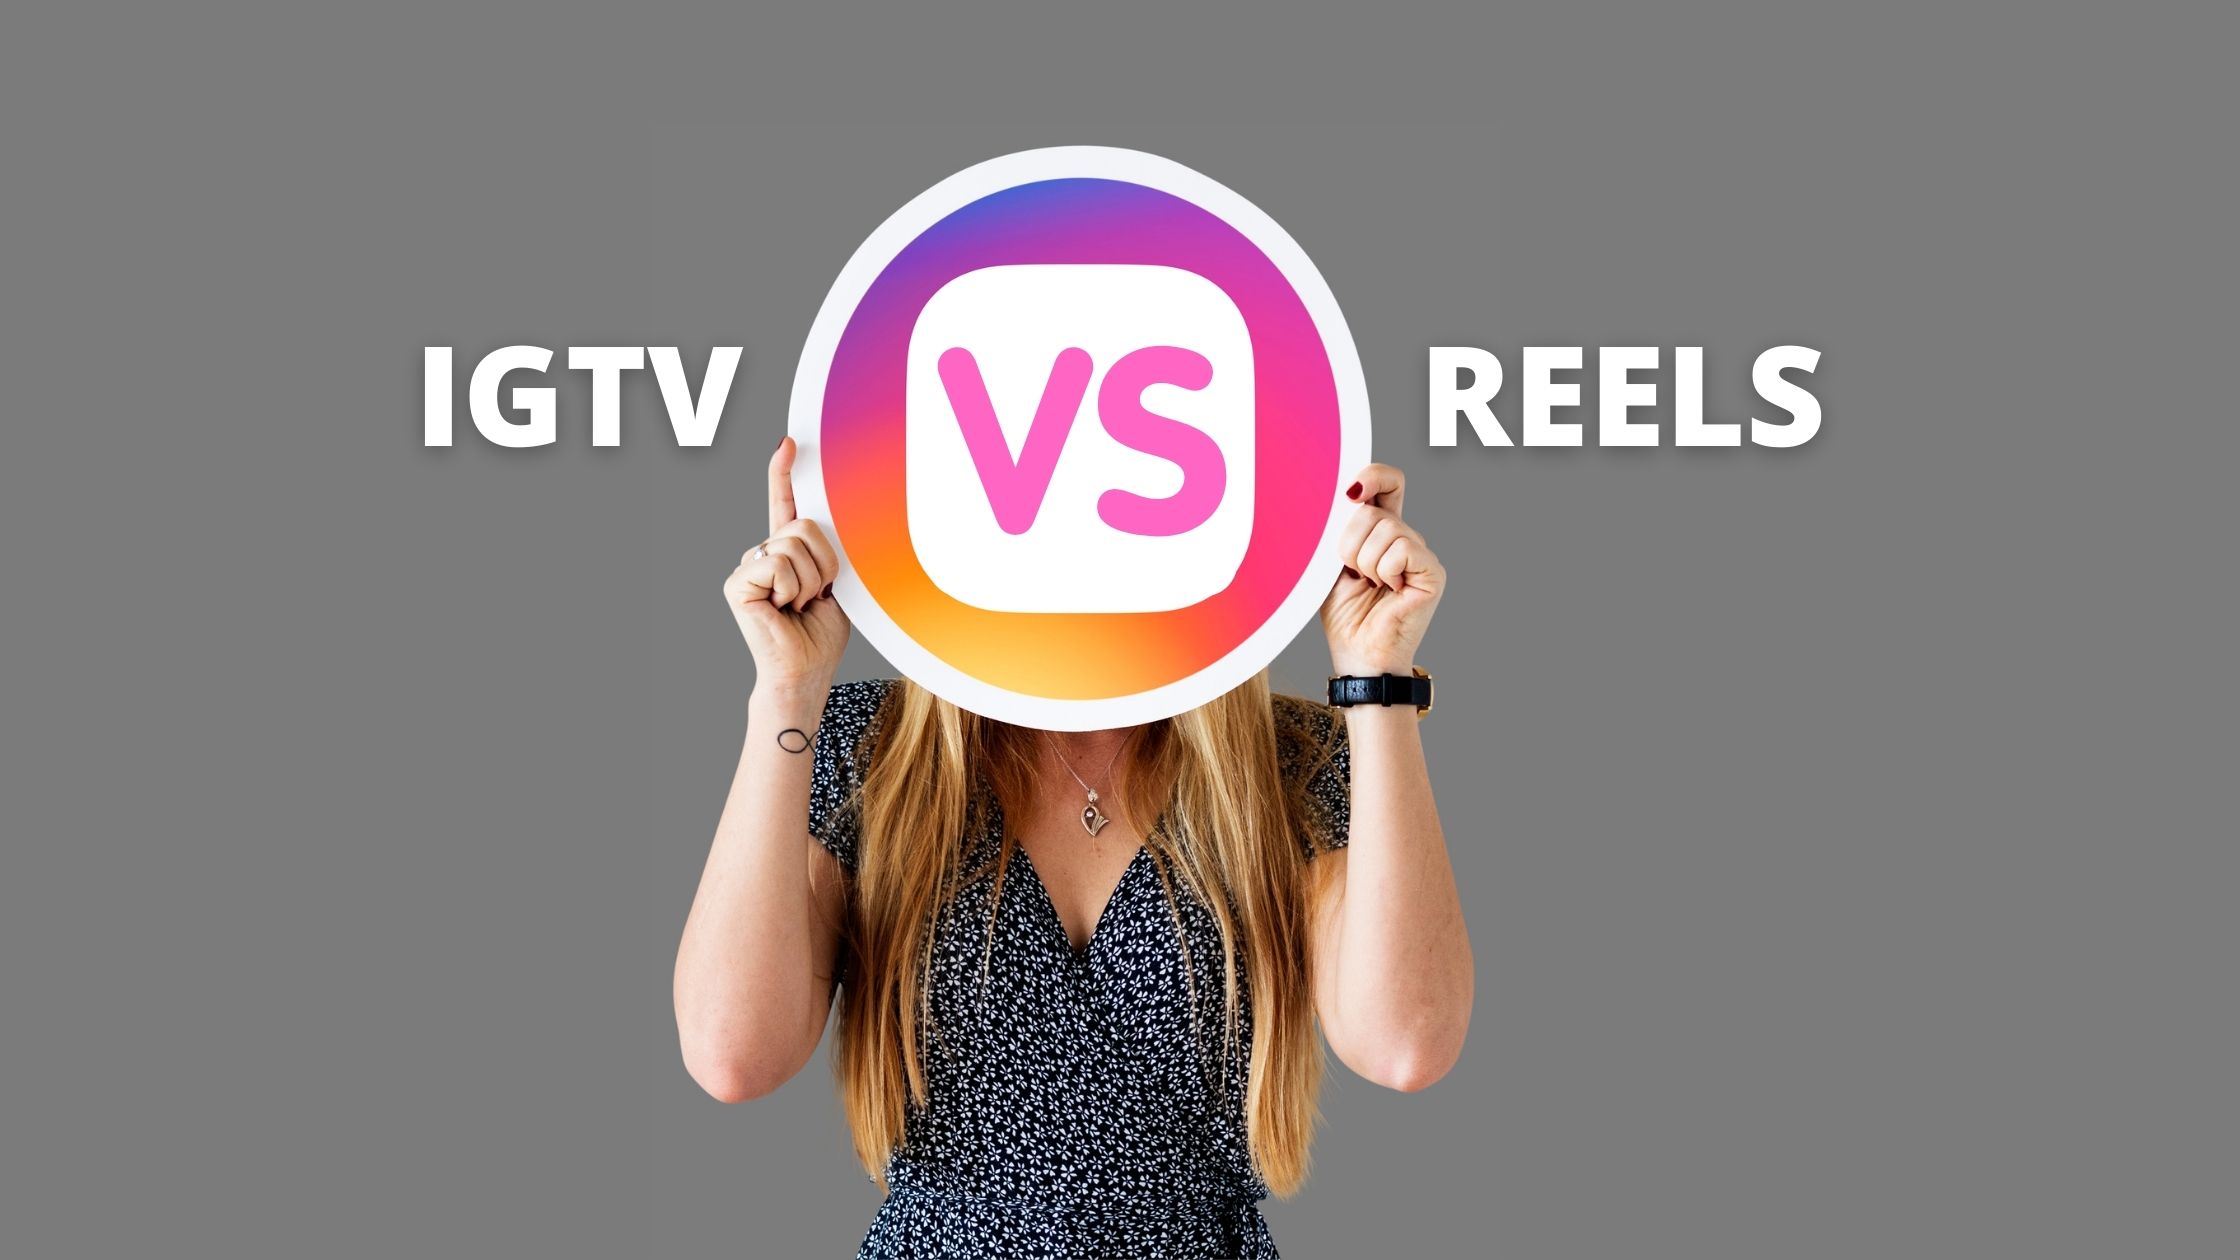 IGTV vs REELS